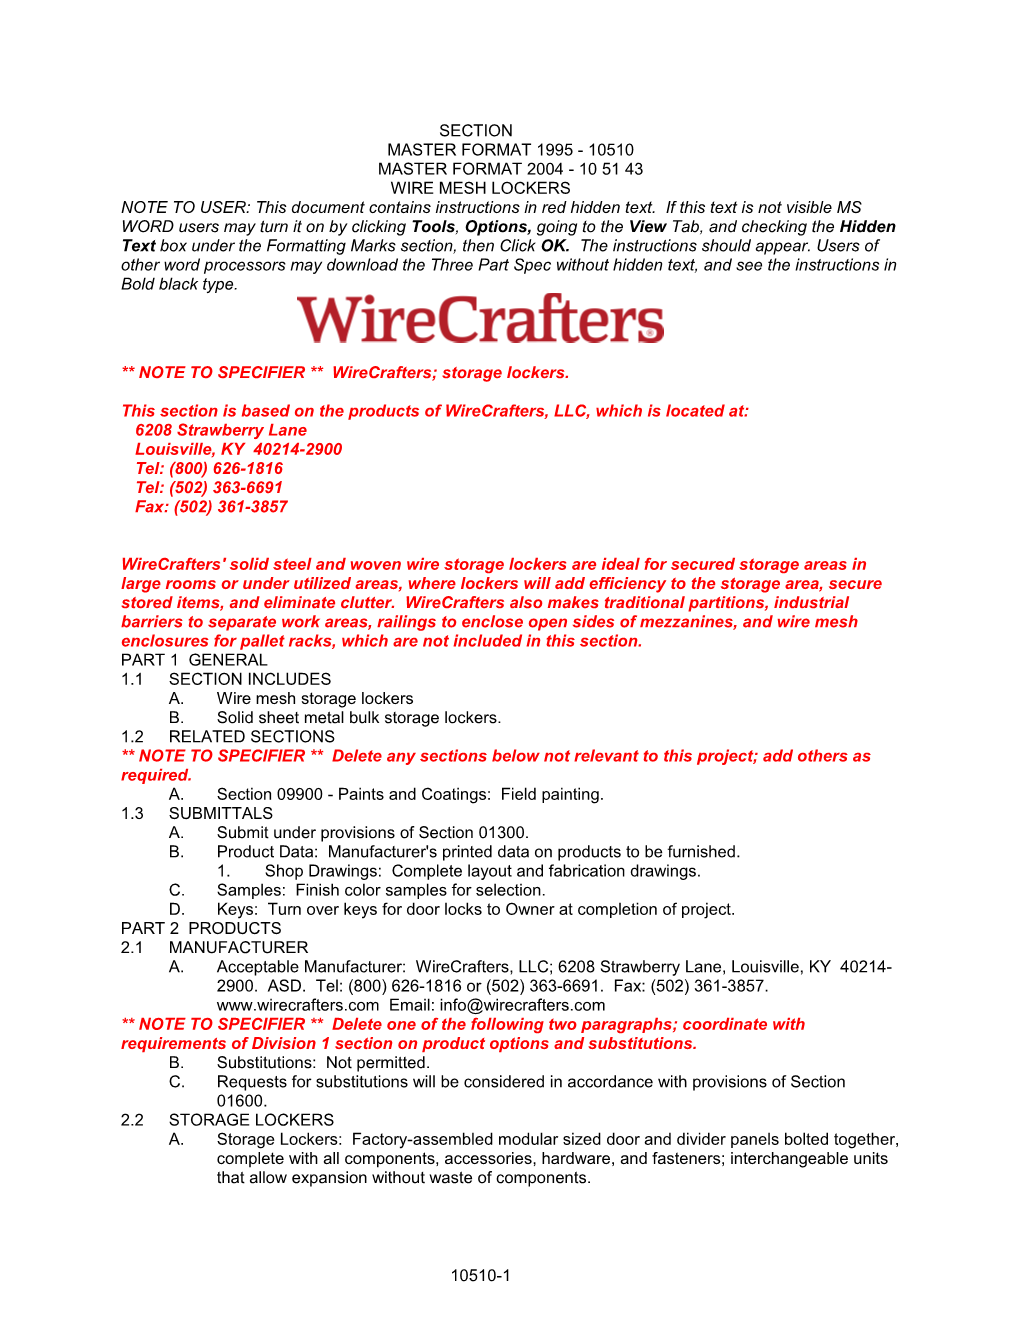 NOTE to SPECIFIER Wirecrafters; Storage Lockers